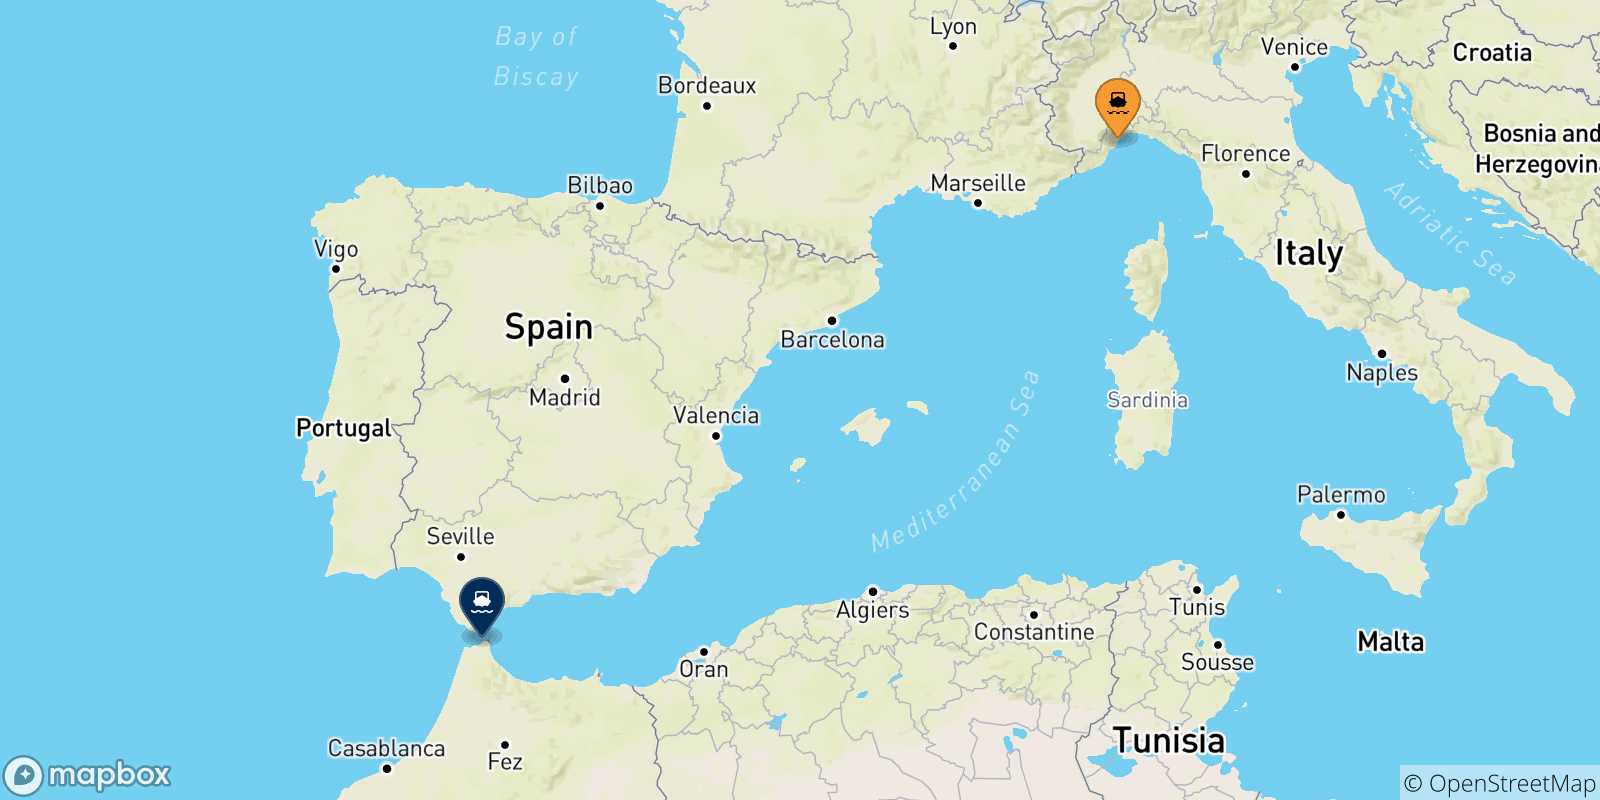 Mappa delle possibili rotte tra Savona e il Marocco